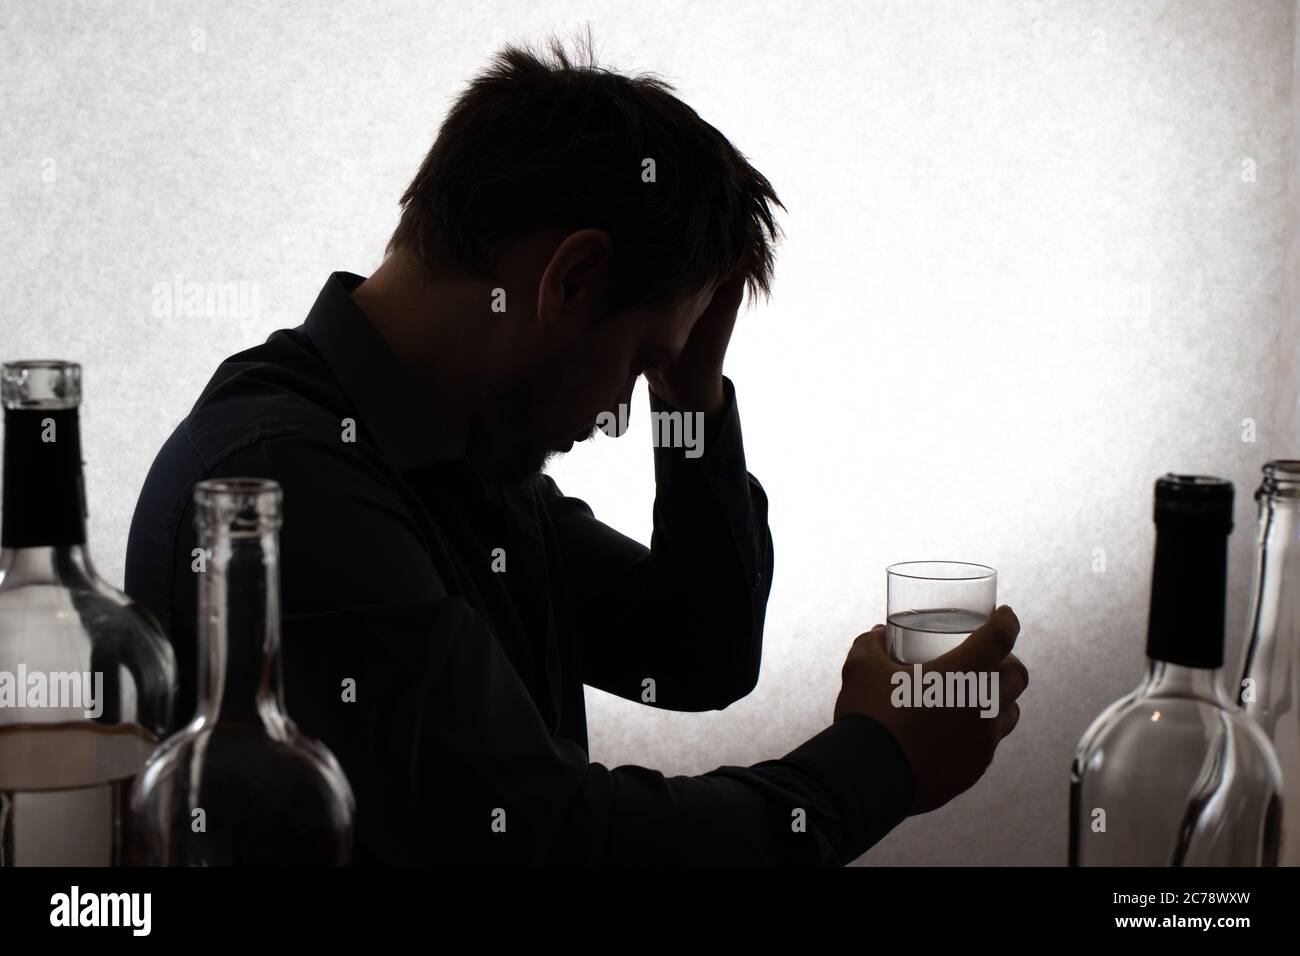 Ein Mann und ein Glas Wodka. Alkoholismus, Alkoholabhängigkeit, Delirium tremens. Stockfoto